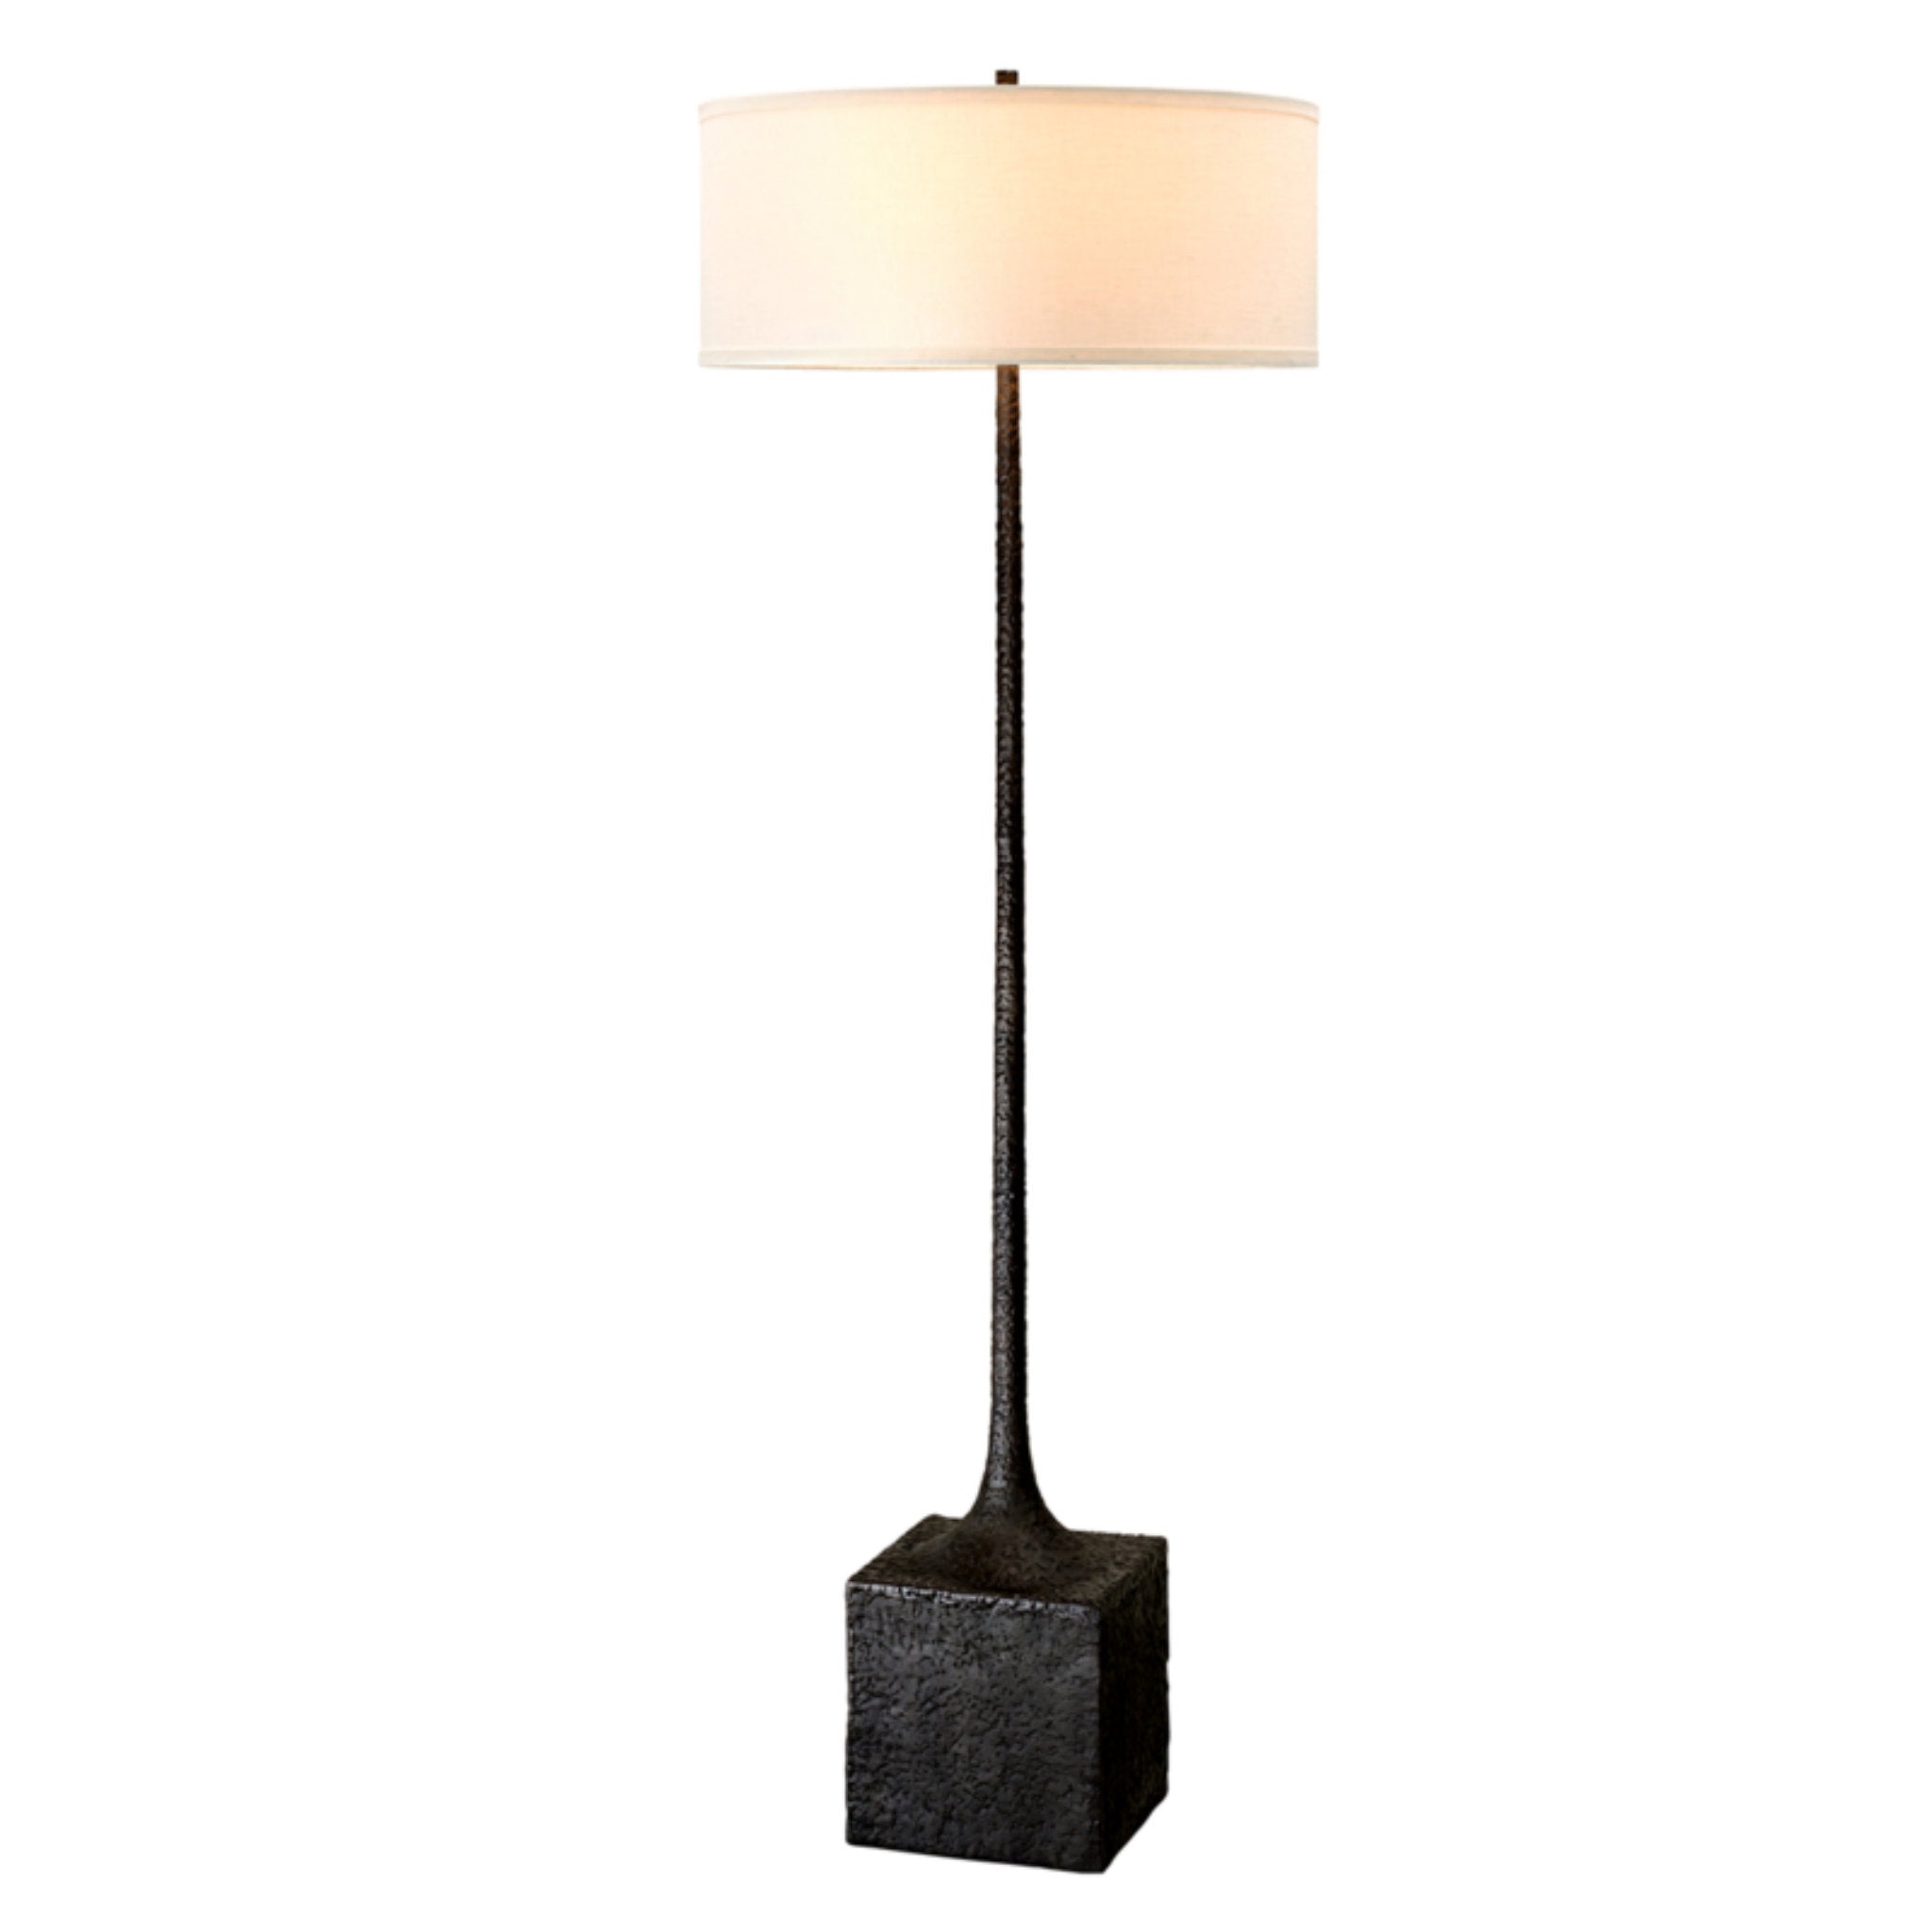 Brera 3 Light Floor Lamp in Tortona Bronze